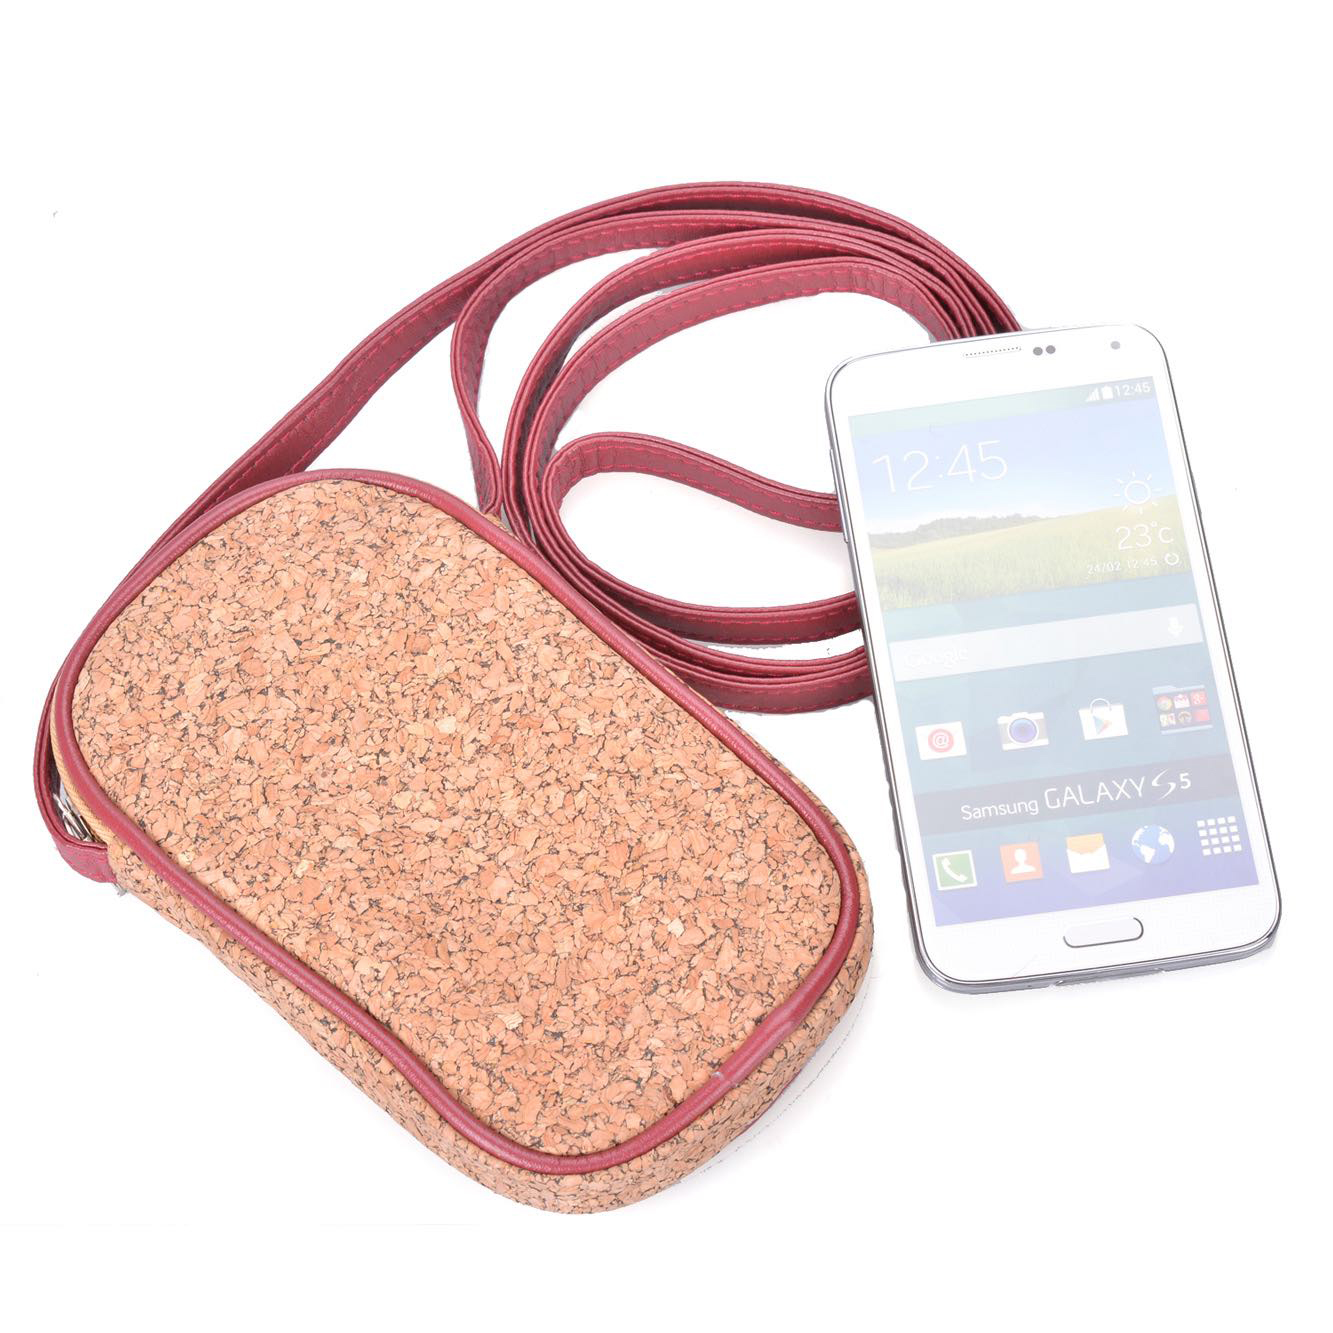 Vegan Cork Crossbody Bag Cell Phone Purse Wallet lightweightt Roomy Travel Passport Bag